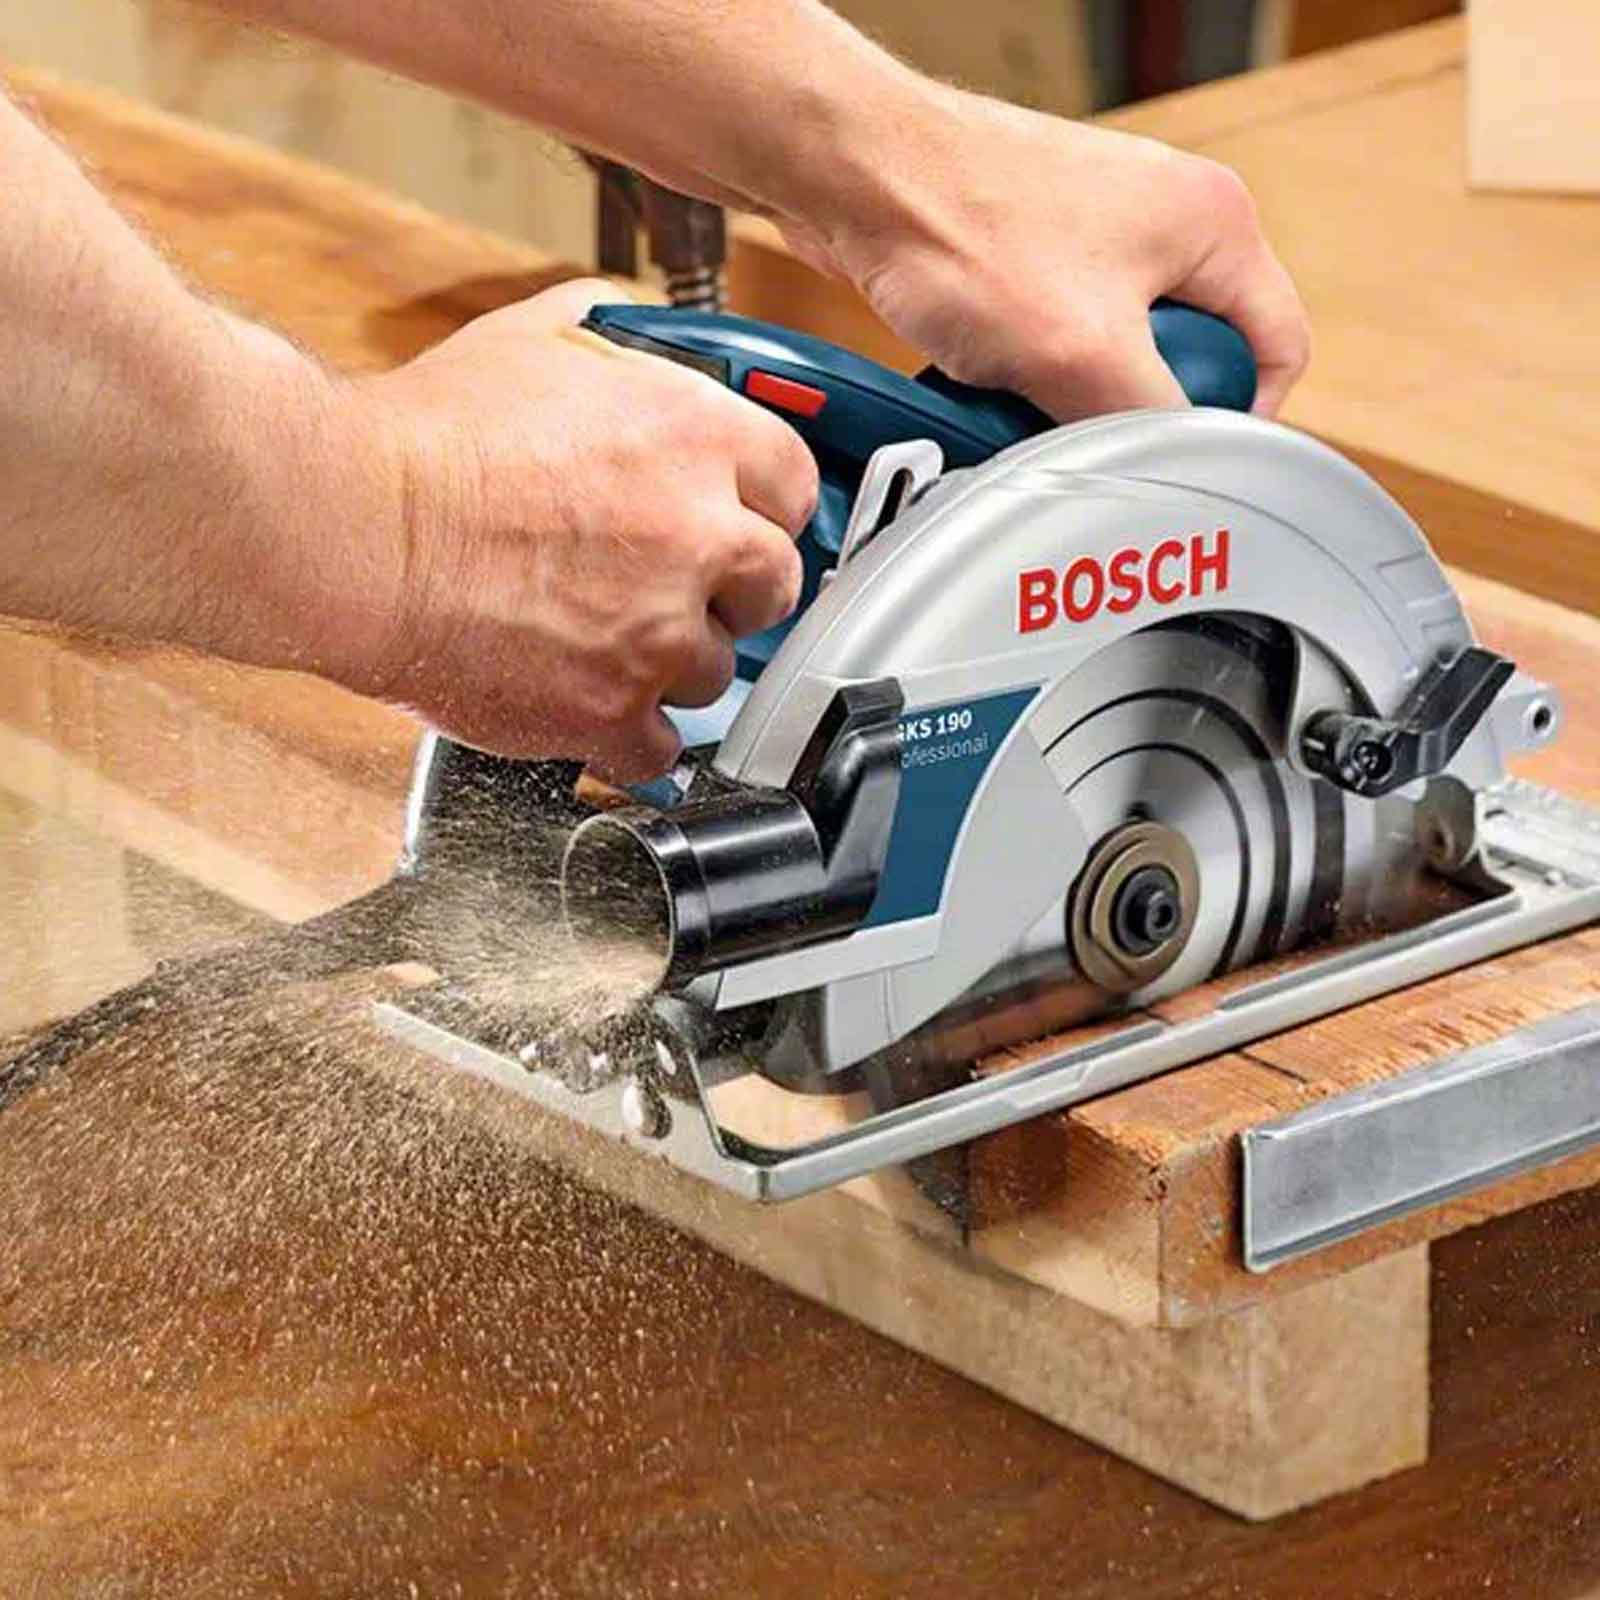 Пила по дереву бош. Bosch GKS 190. Bosch 190 GKS циркулярка. Bosch GKS 190 circular saw. Пила Bosch GKS 190 0601623000.